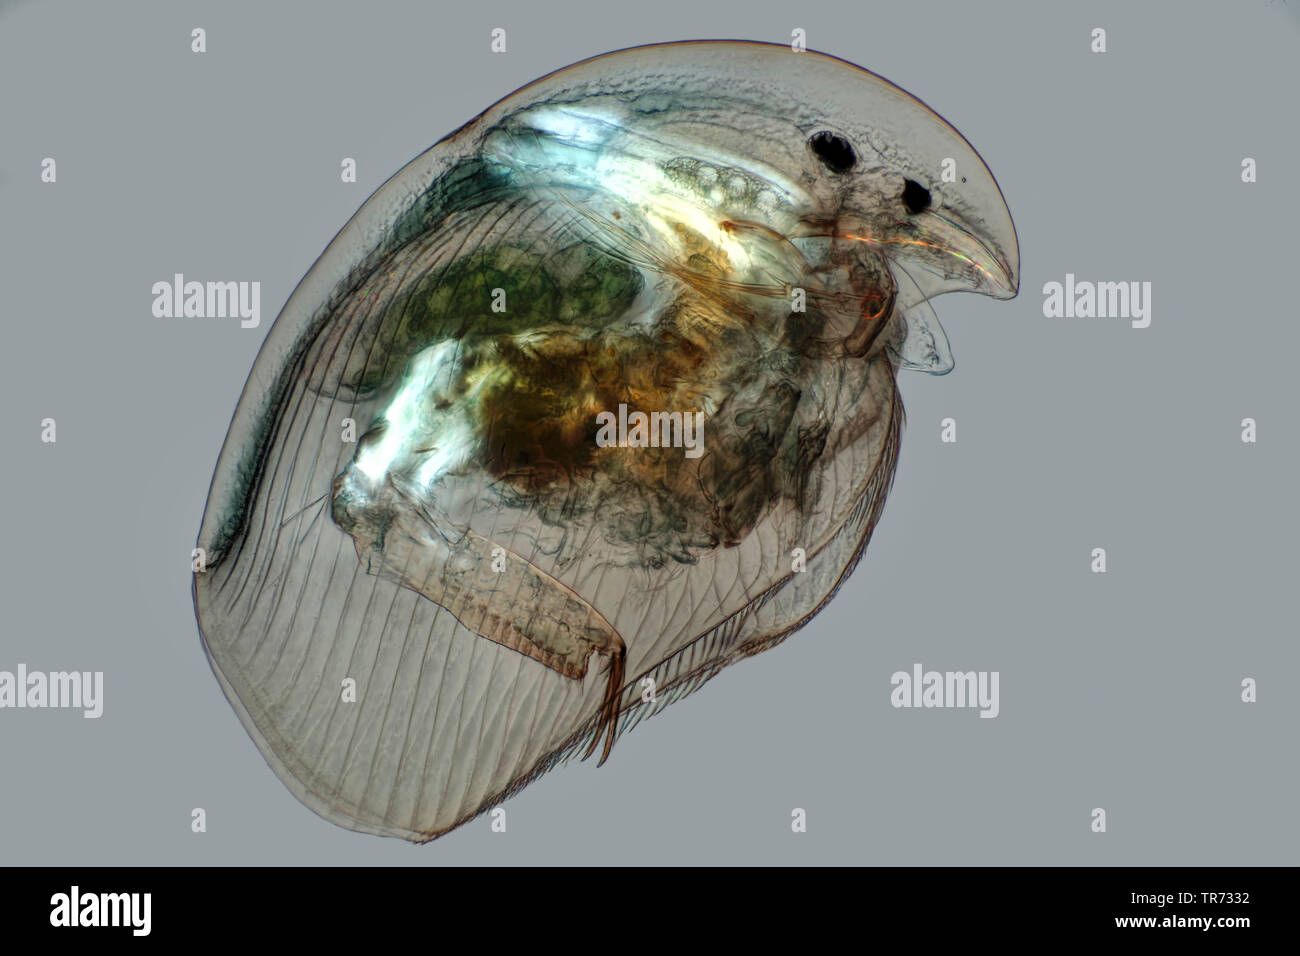 La pulga de agua común (Daphnia pulex), luz-imagen de campo con la polarización, la imagen microscópica, Alemania Foto de stock